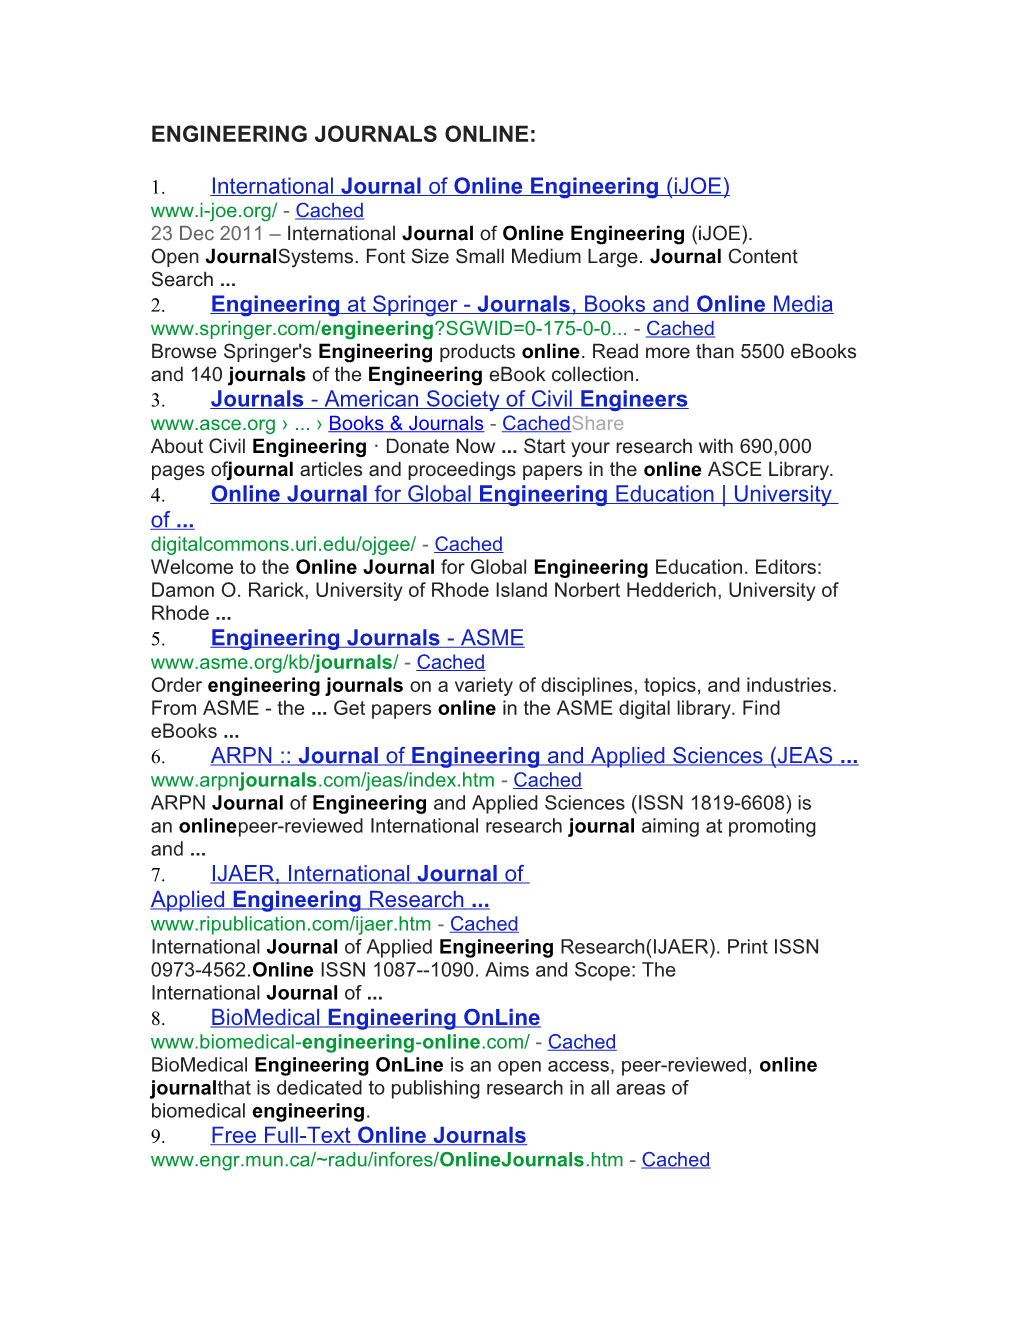 Engineering Journals Online